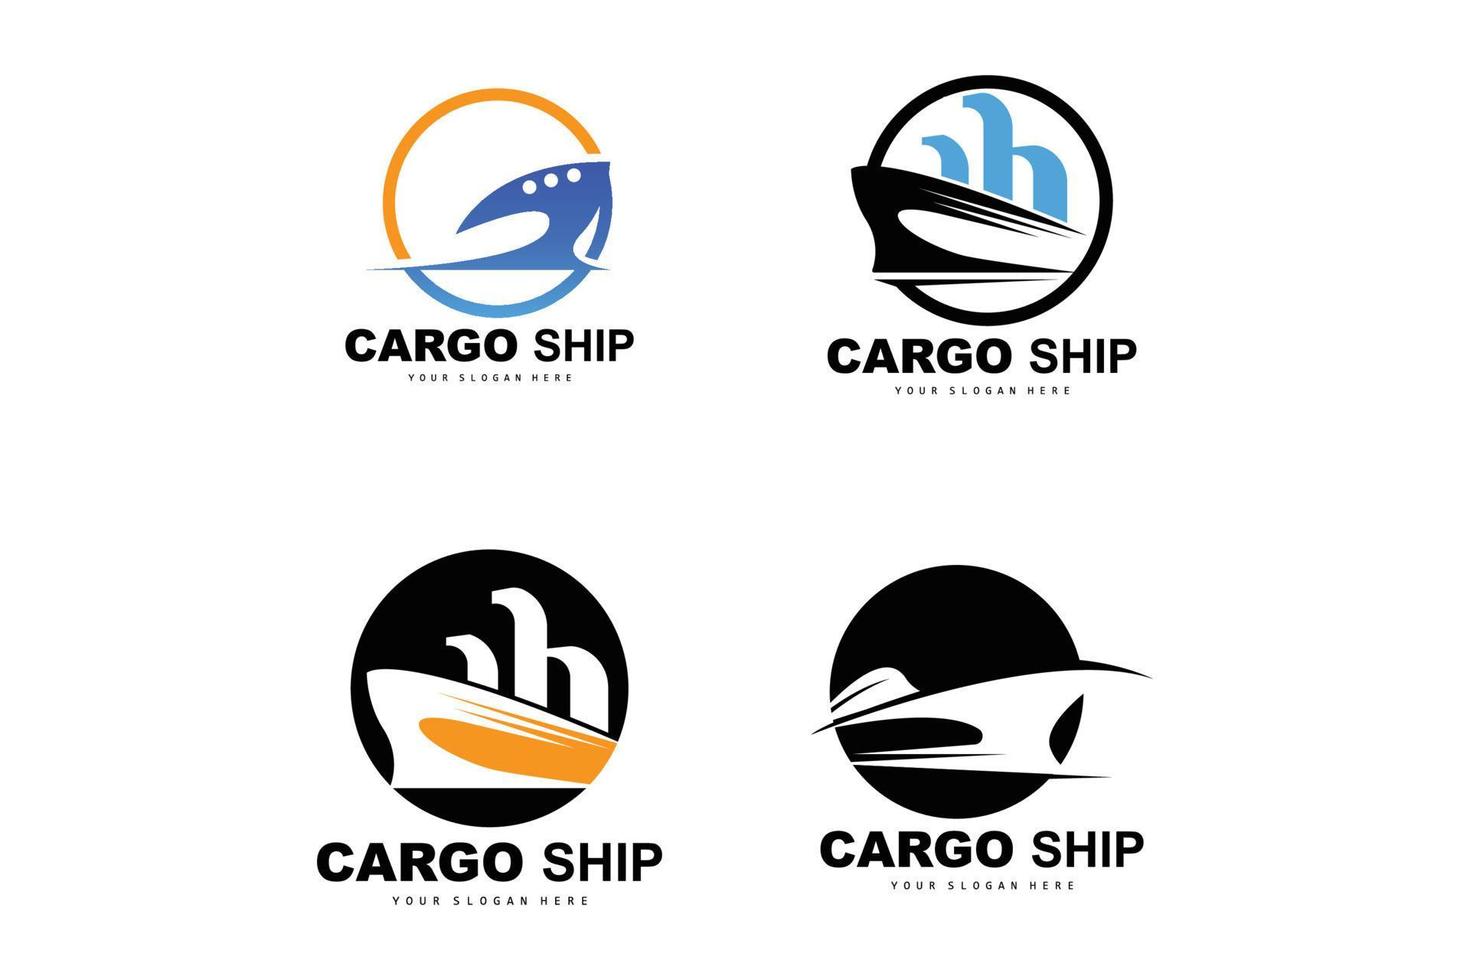 logo de navire cargo, vecteur de navire cargo rapide, voilier, conception pour entreprise de fabrication de navires, navigation fluviale, véhicules marins, transport, logistique